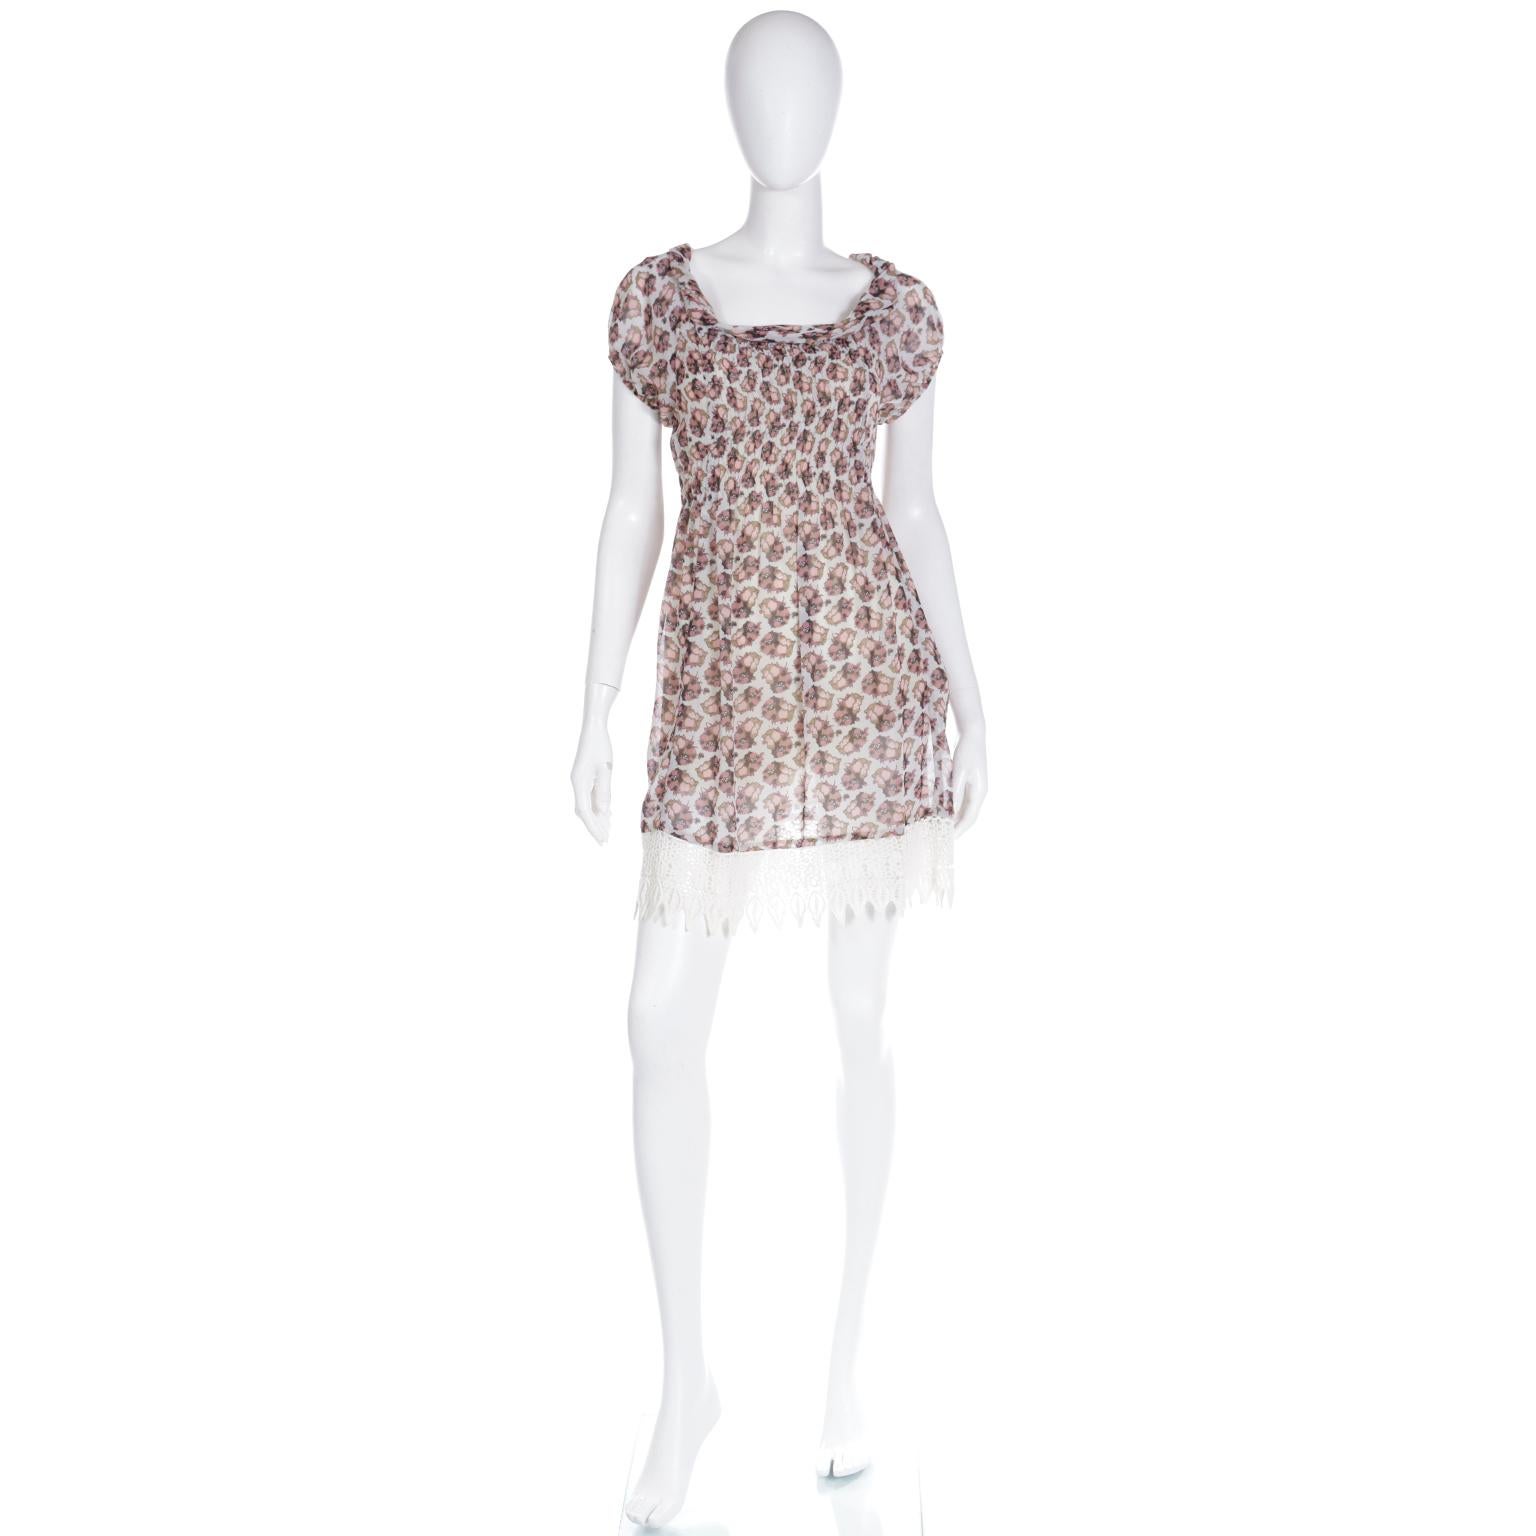 Cette jolie mini robe Dries Van Noten est facile à porter et présente un joli imprimé floral. La robe a des manches courtes et une encolure roulée unique qui est fendue de sorte qu'elle ressemble presque à des bretelles. Nous avons essayé de le